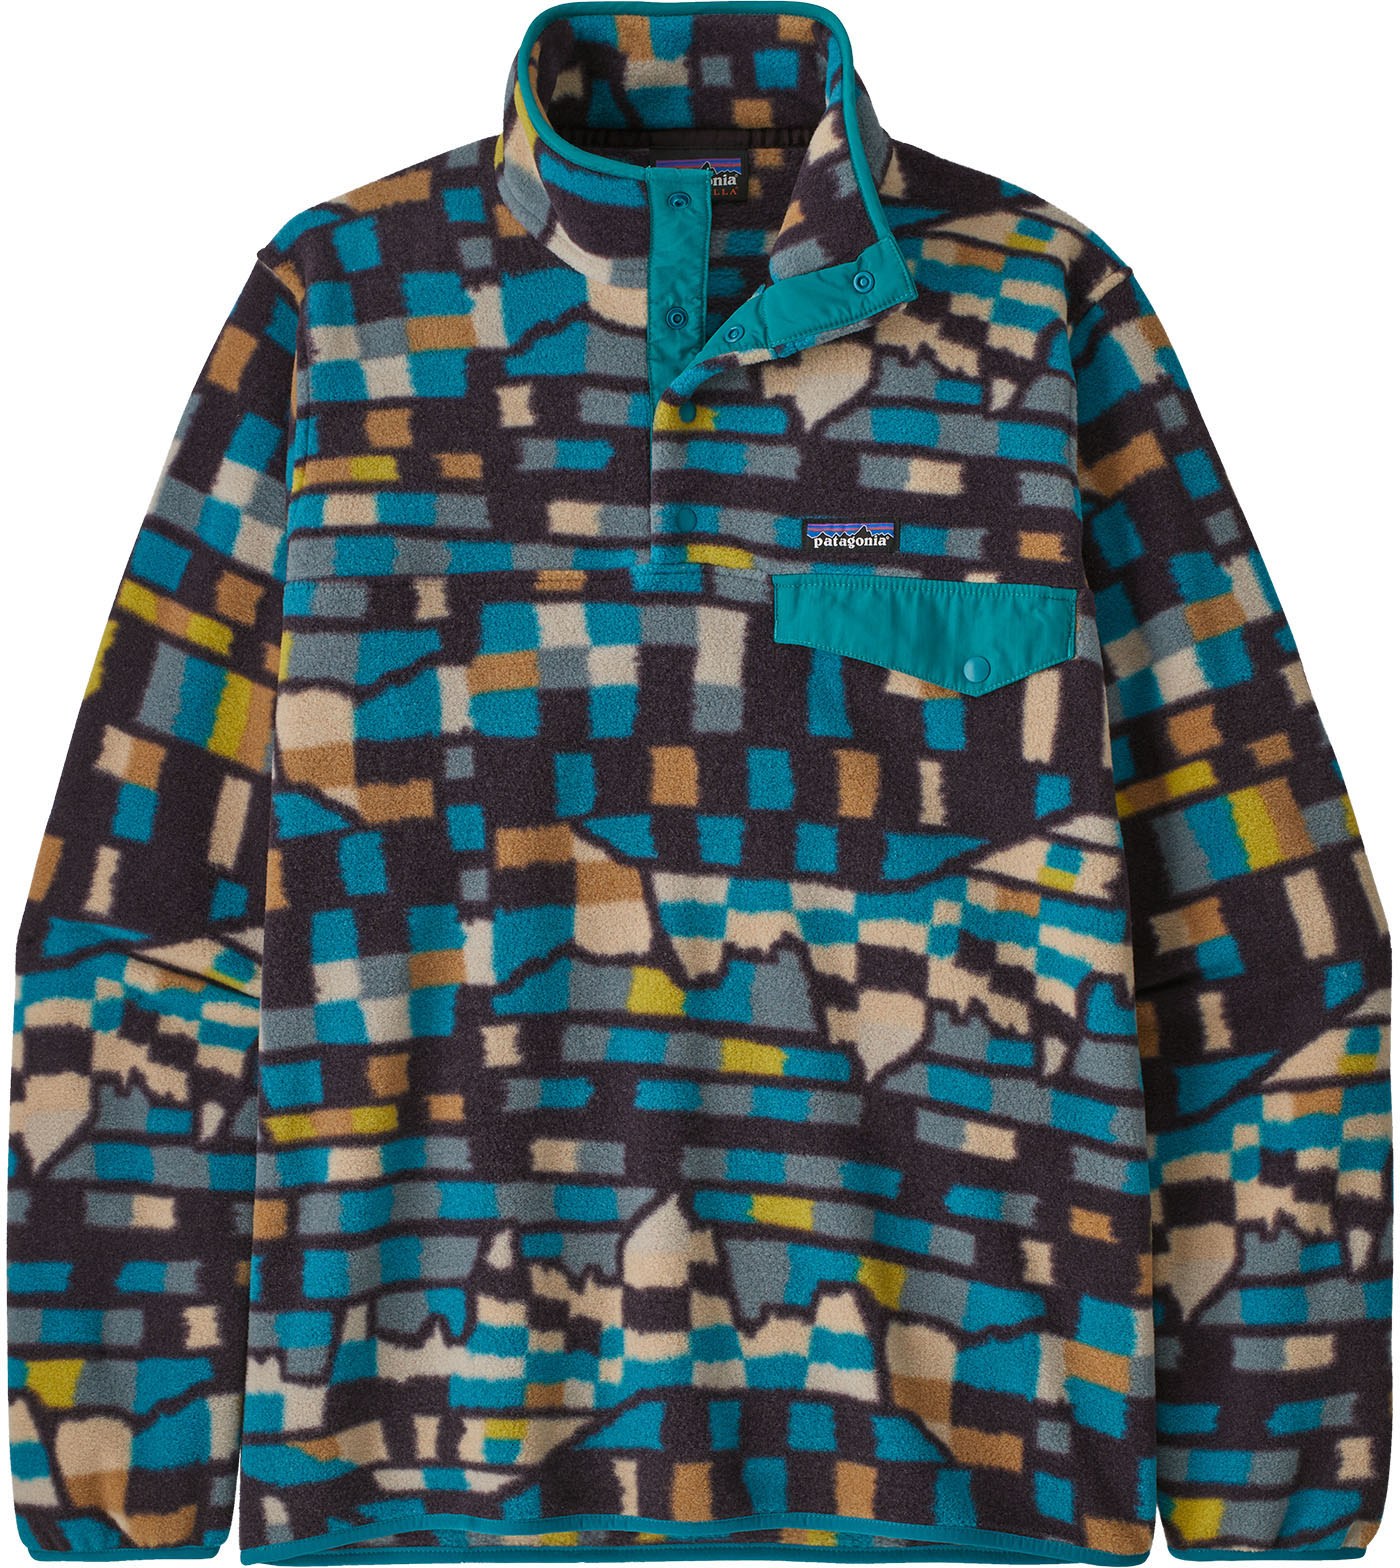 Легкий флисовый пуловер Synchilla Snap-T — мужской Patagonia, синий